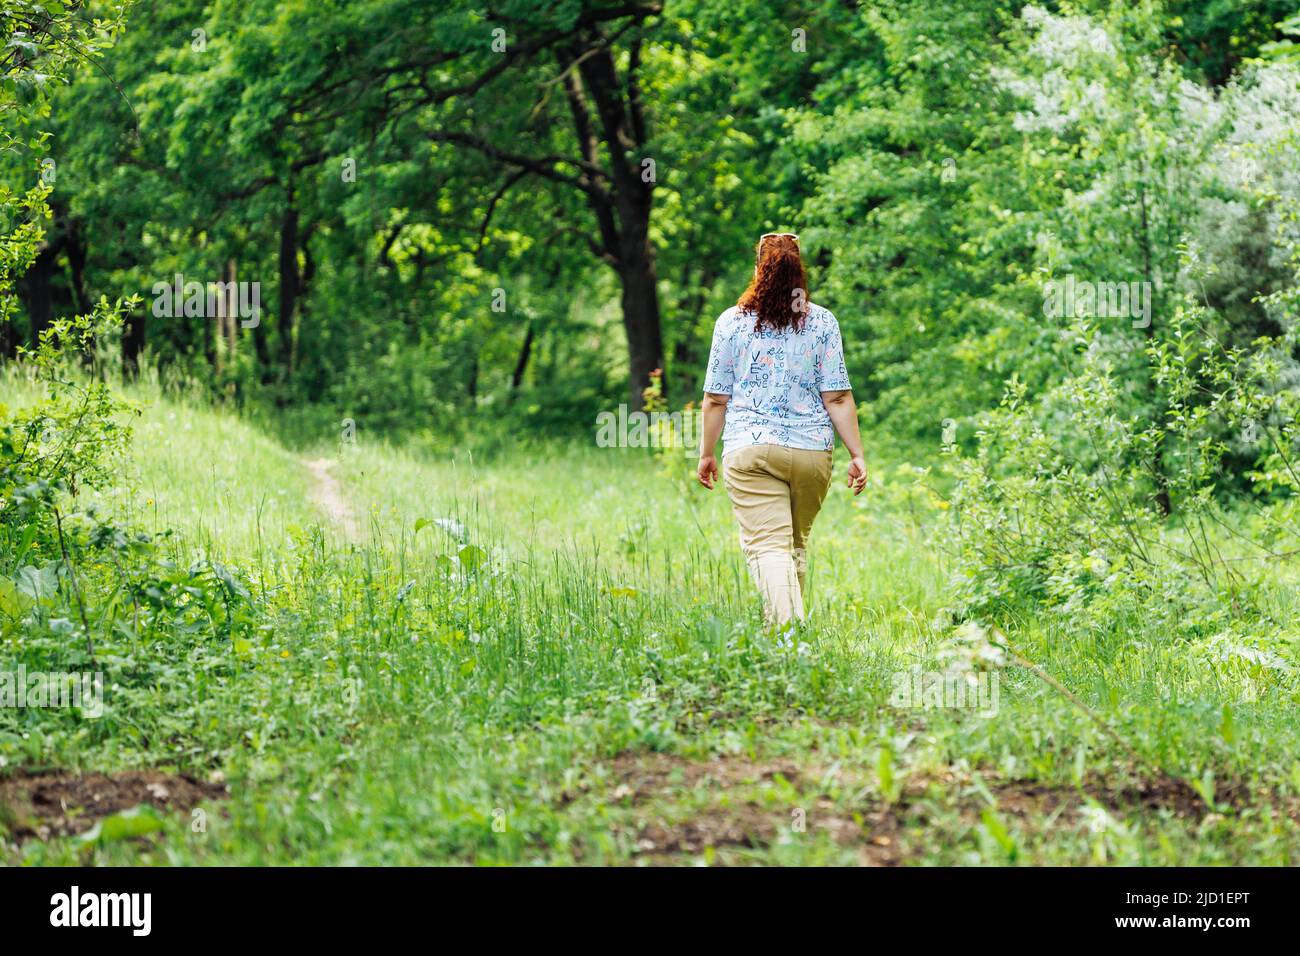 Ritratto di giovane donna buxom con lunghi capelli rossi ricci che camminano nella foresta del parco tra alberi verdi cespugli. Estate, natura. Foto Stock